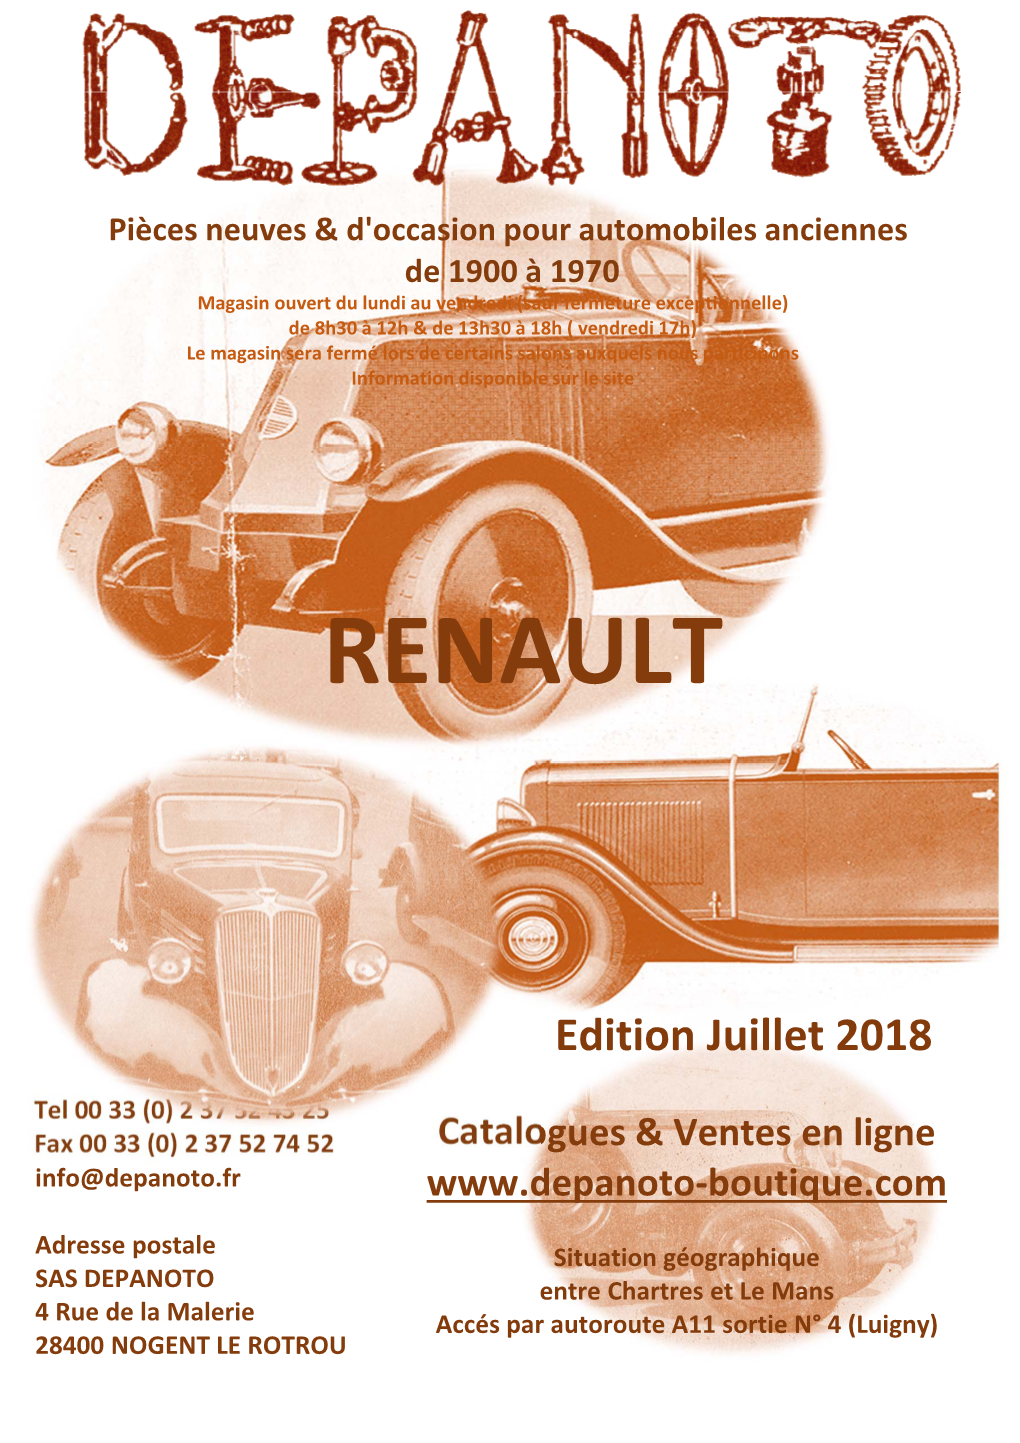 Couverturre Catalogue Renault 2017